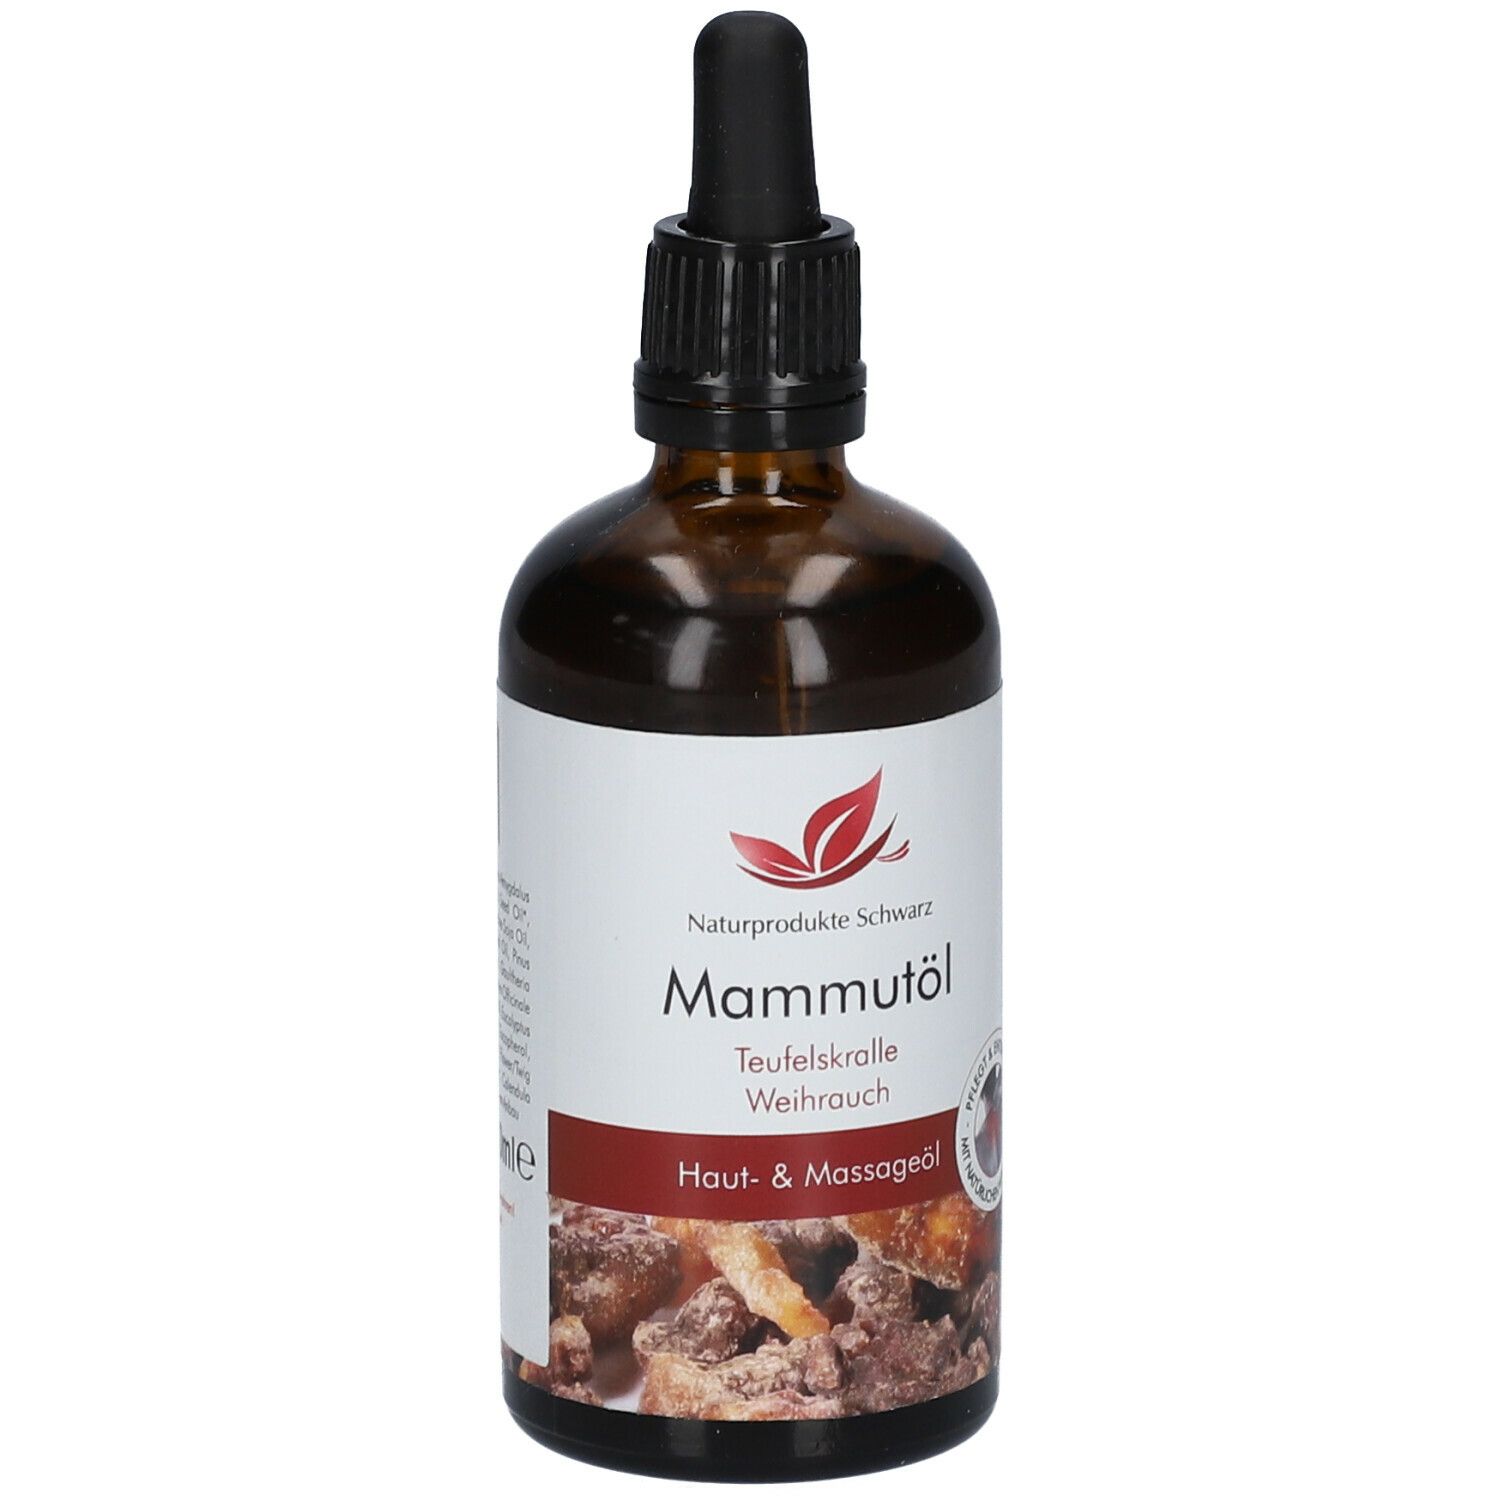 Mammutöl - Massageöl mit Teufelskralle und Weihrauch